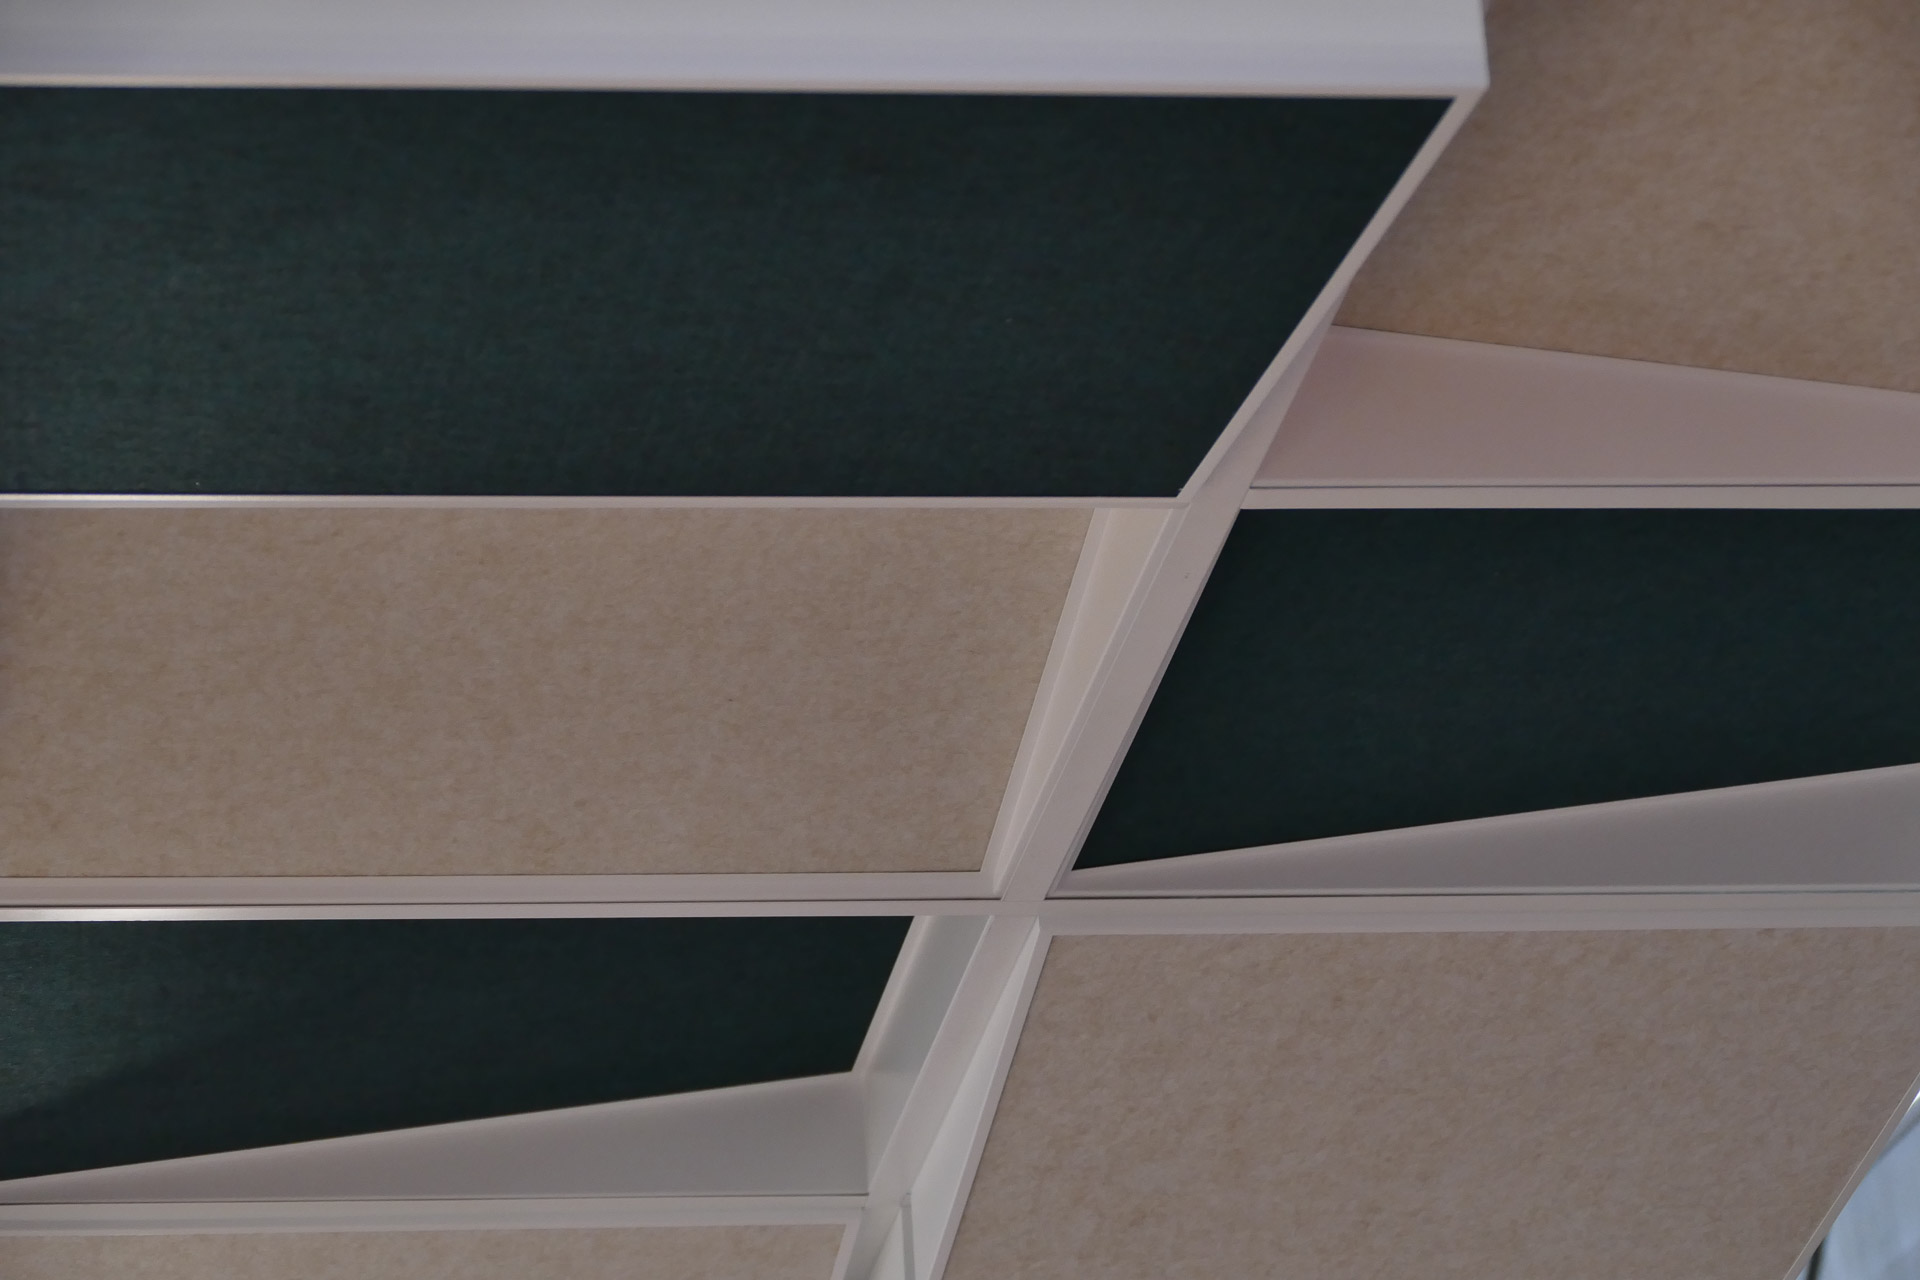 Sufit podwieszany z akustycznych kolorowych płyt sufitowych zamontowanych w ramie Tilt7